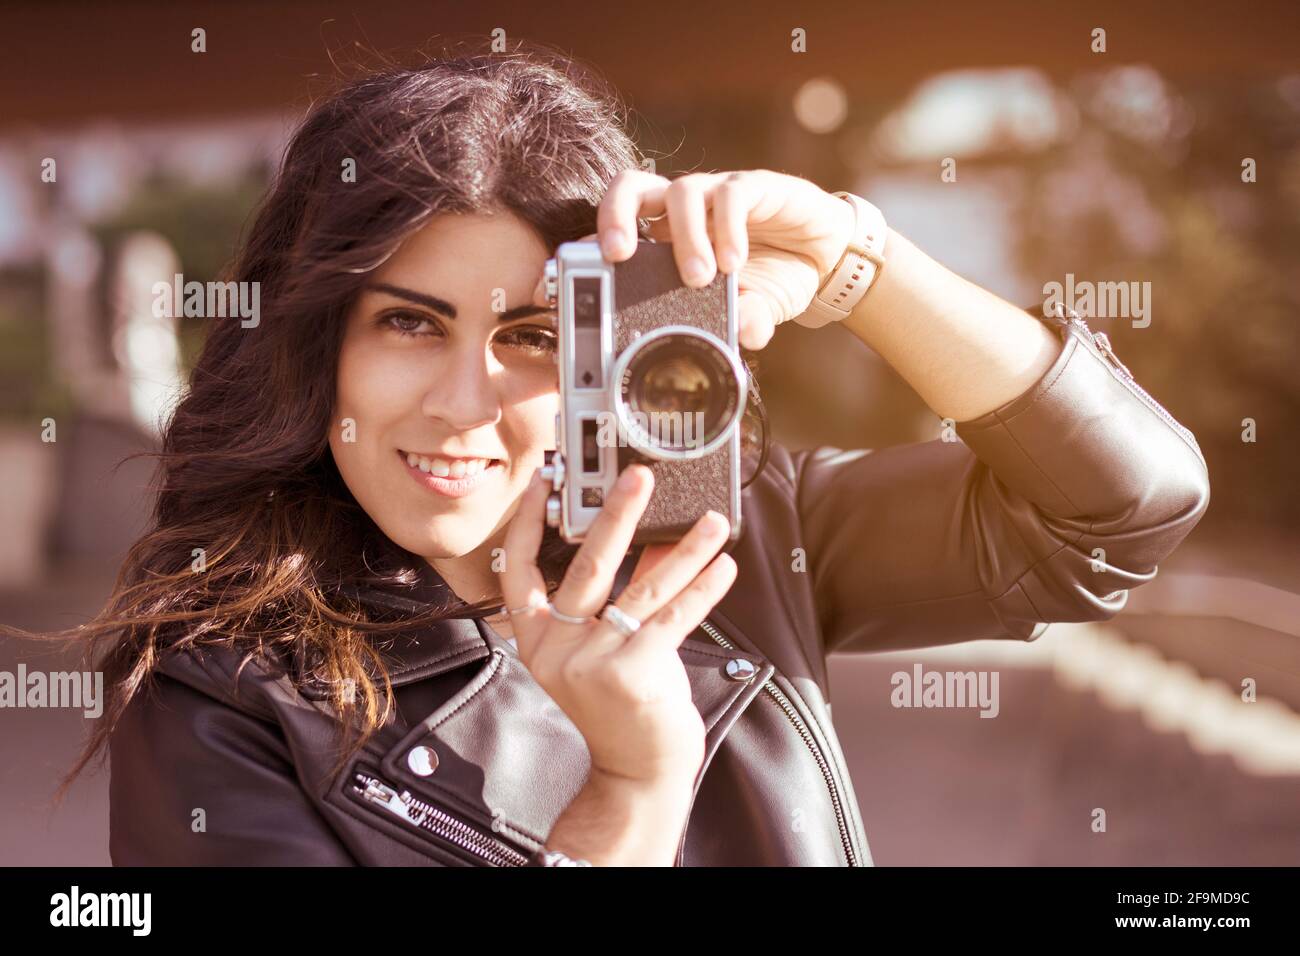 Porträt einer jungen Fotografin, die mit ihrer Analogkamera ein Foto gemacht hat. Sie lächelt in der Stadt und zieht sich lässig an. Platz für Text. Stockfoto